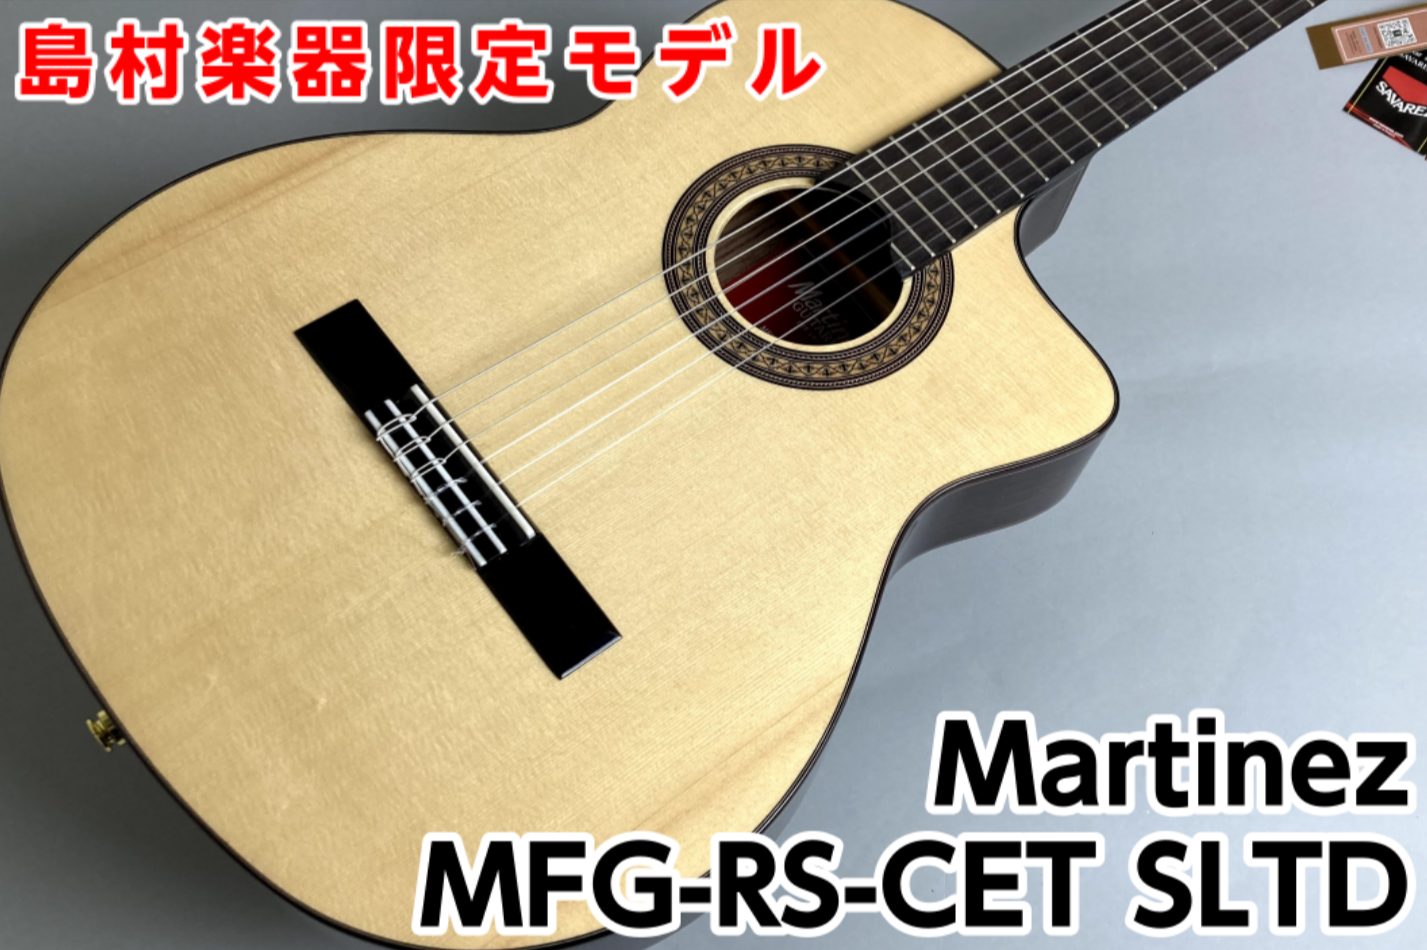 【島村楽器限定モデル】Martinez MFG-RS-CET SLTD 入荷！